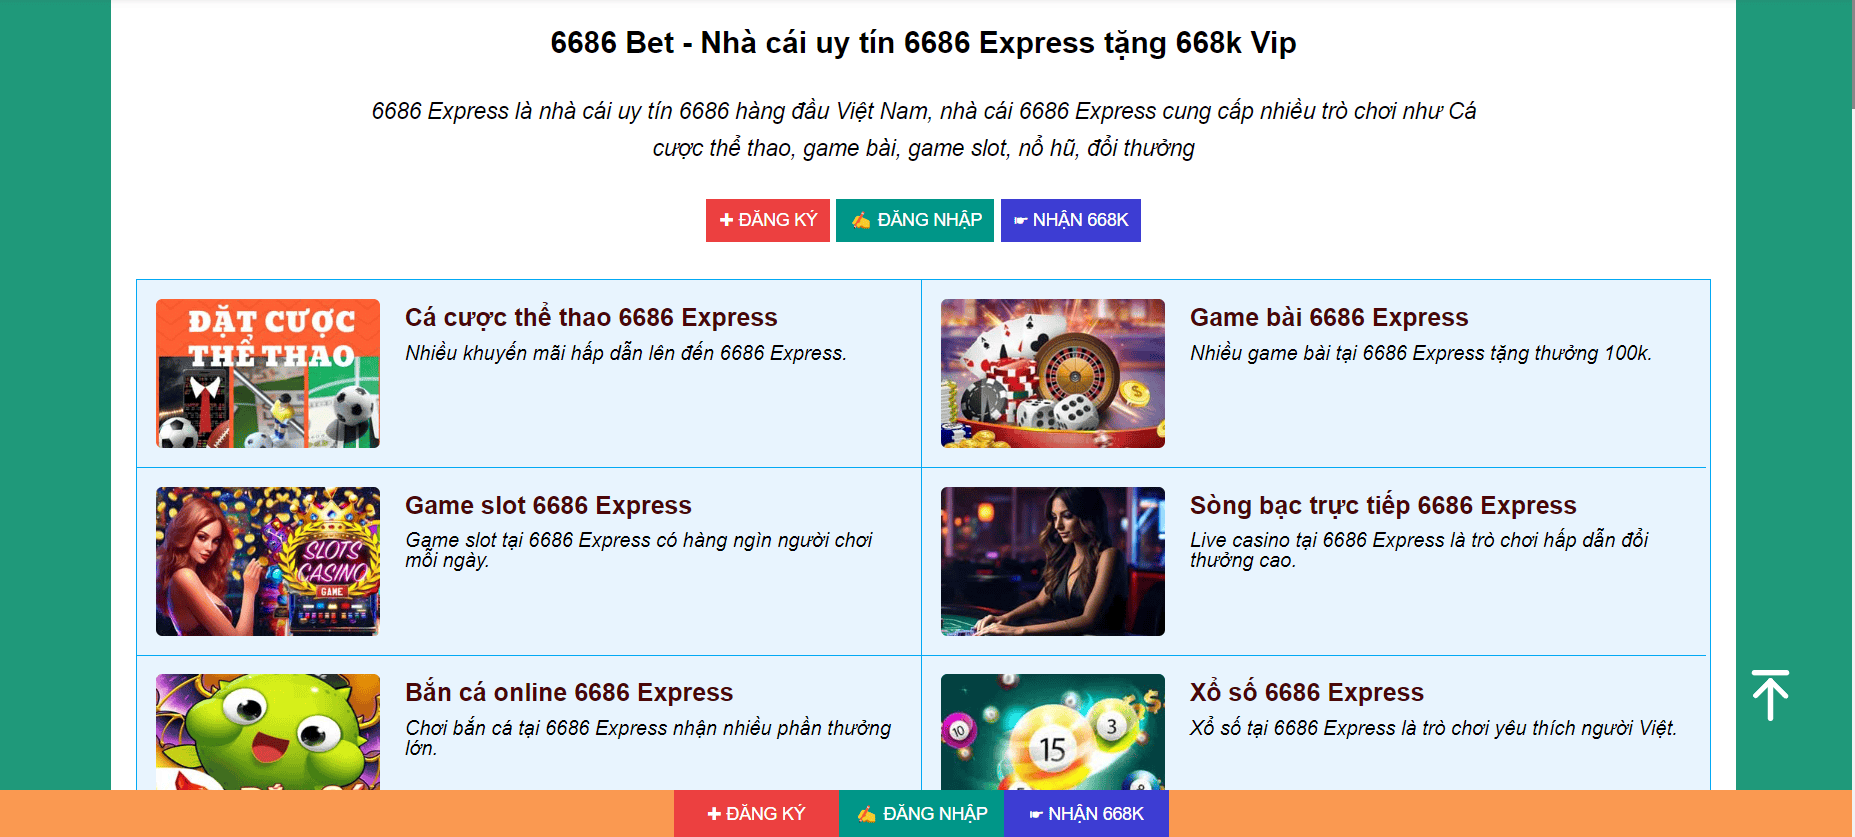 Tham gia cá cược online, lựa chọn ngay nhà cái 6686 Express.